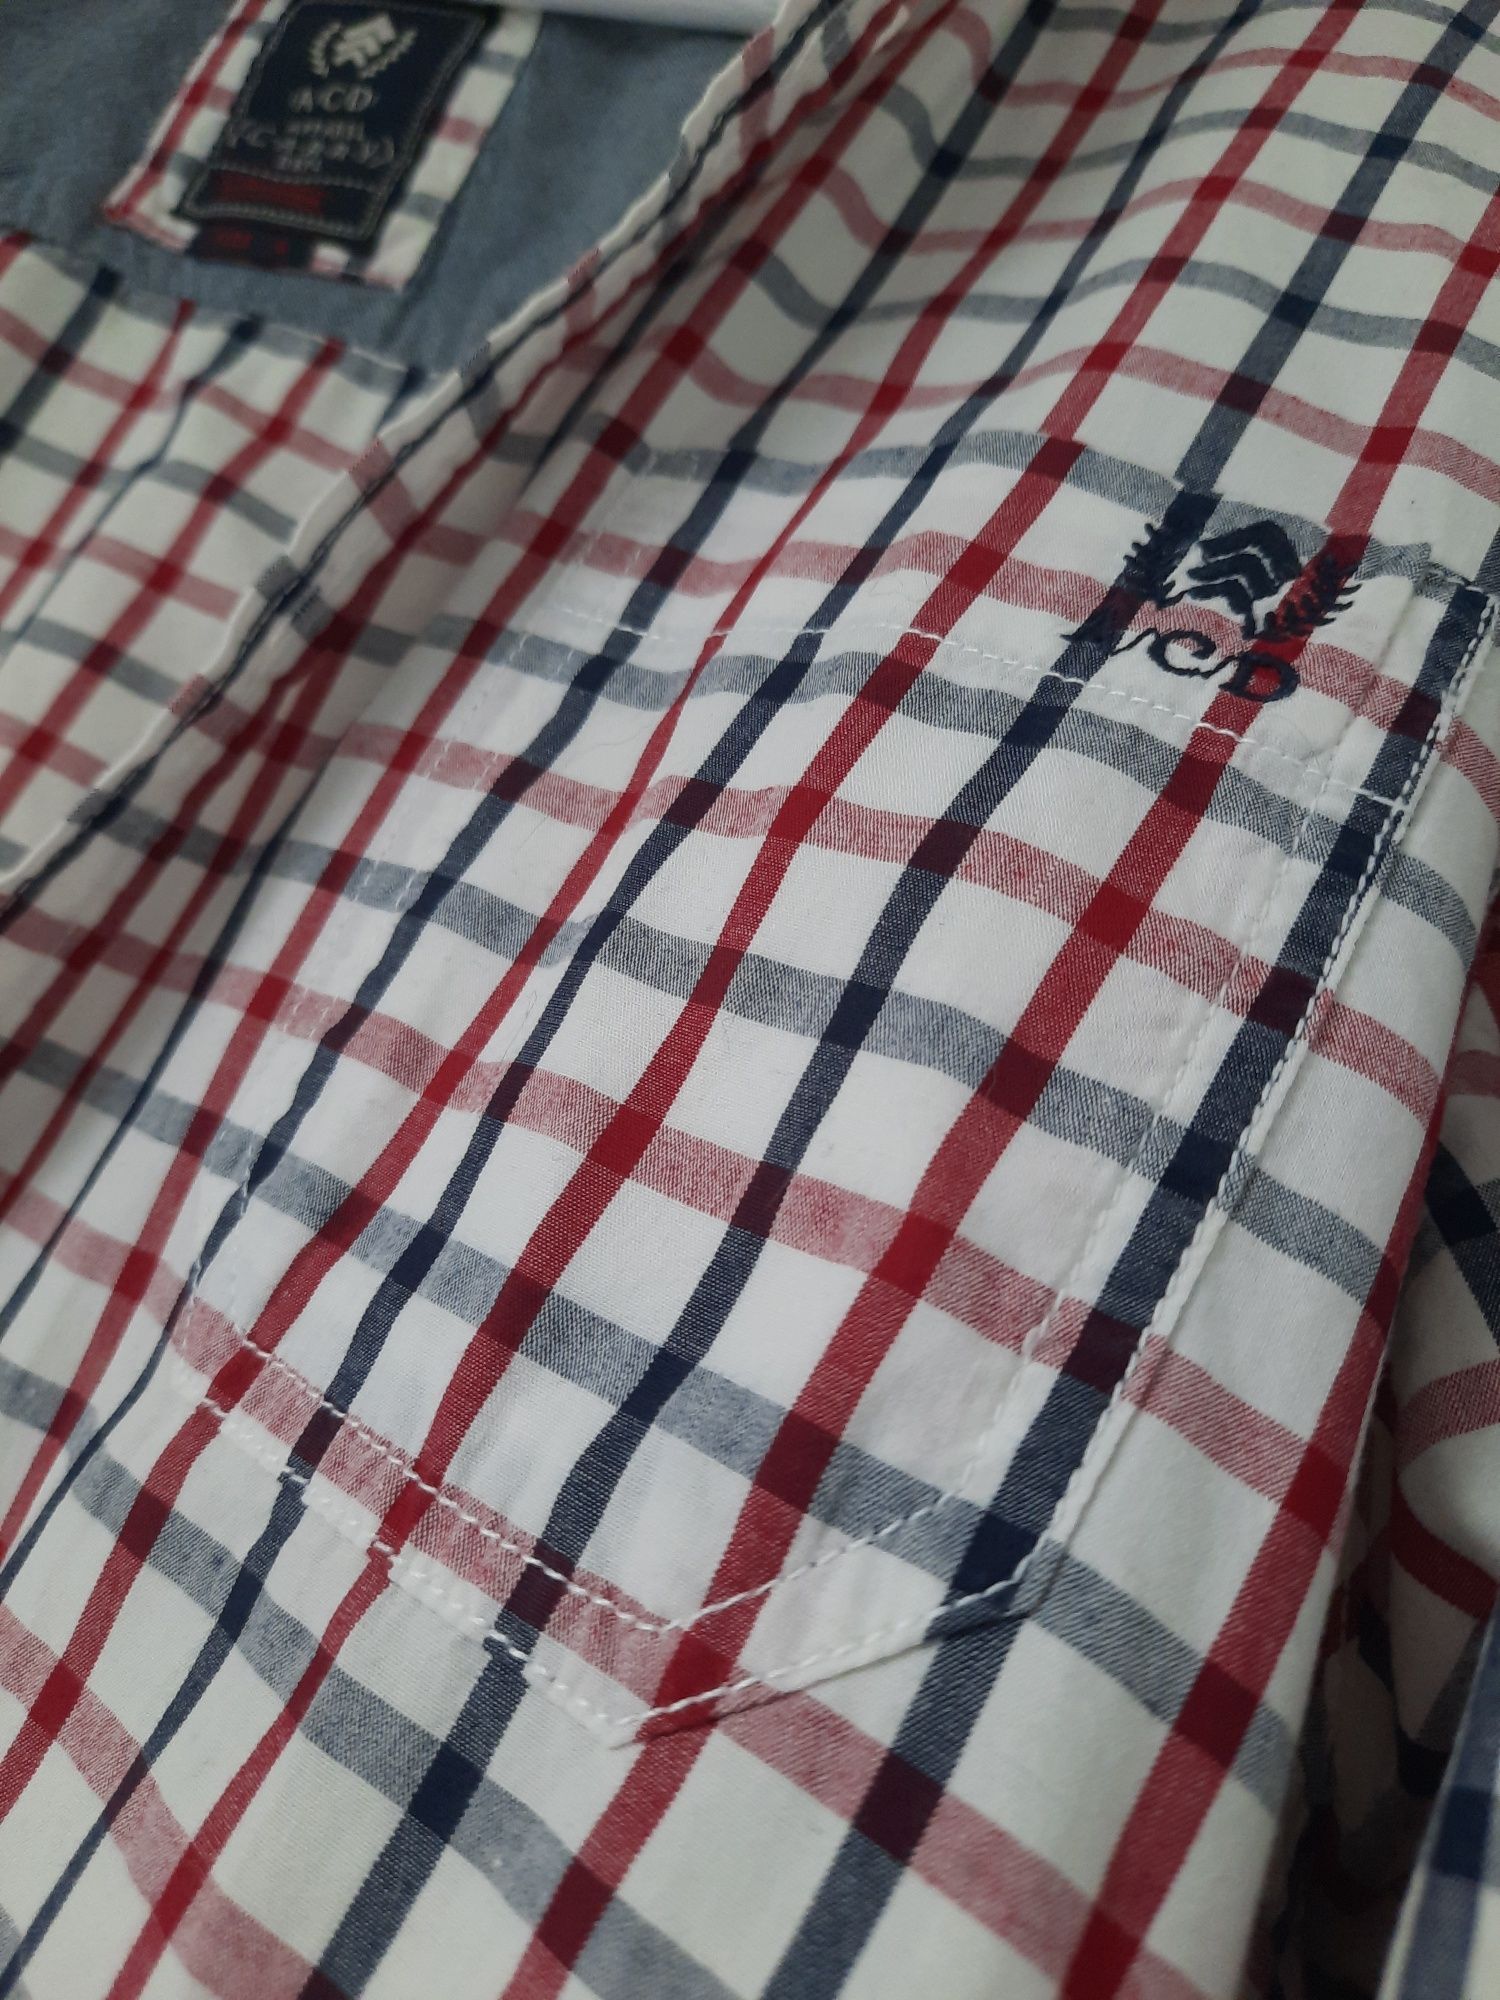 CARRY roz. L, używana koszula z łatami na łokciach